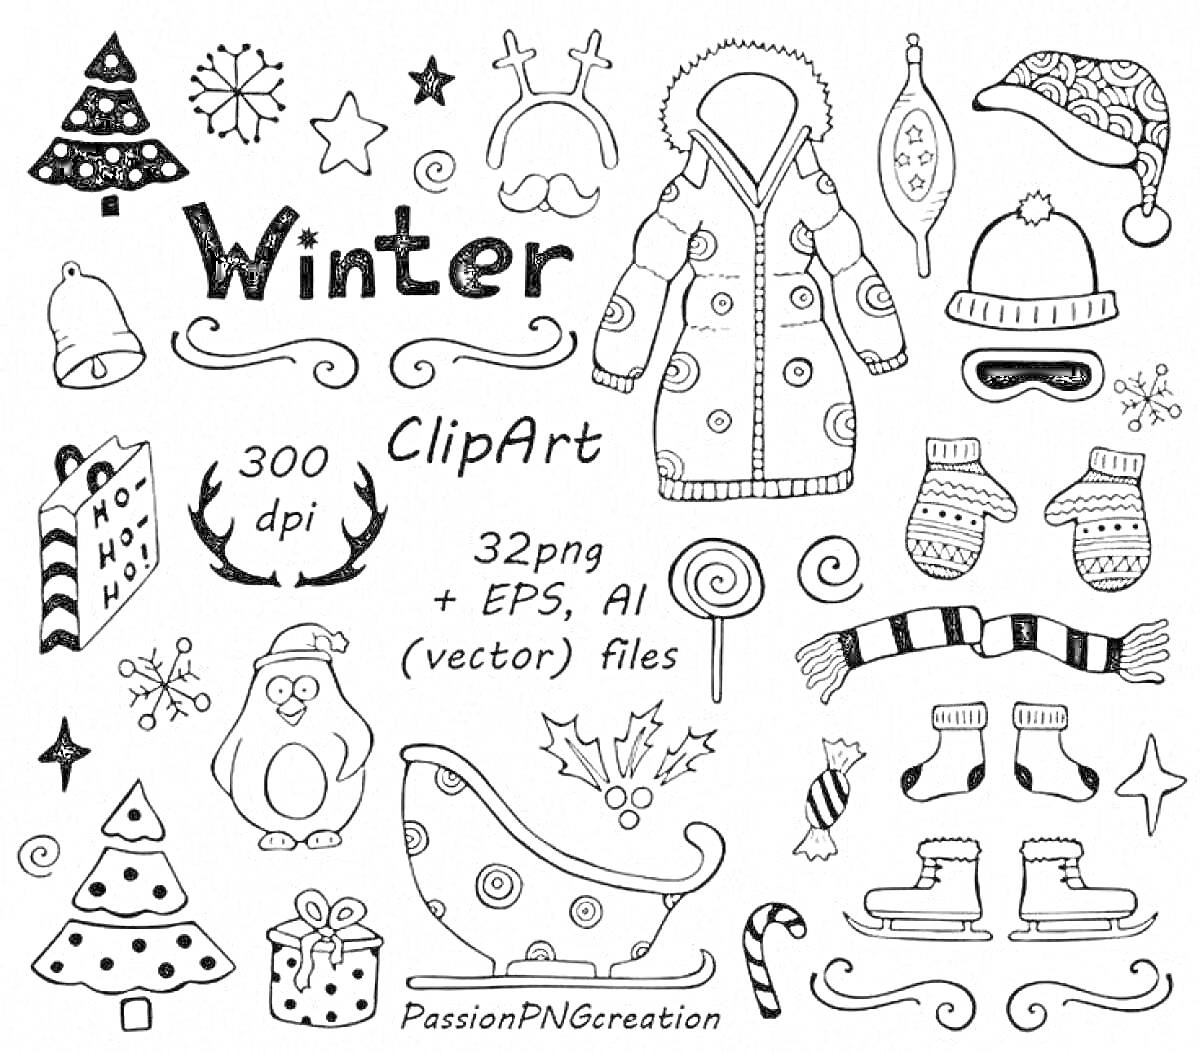 Раскраска Новогодние наклейки - зимняя одежда (куртка, шапки, варежки, шарф, носки), елка, рождественские конфеты, рождественский пакет, пингвин, коньки, санки, снежинки, леденцы, звезды, сердечки, снежинка